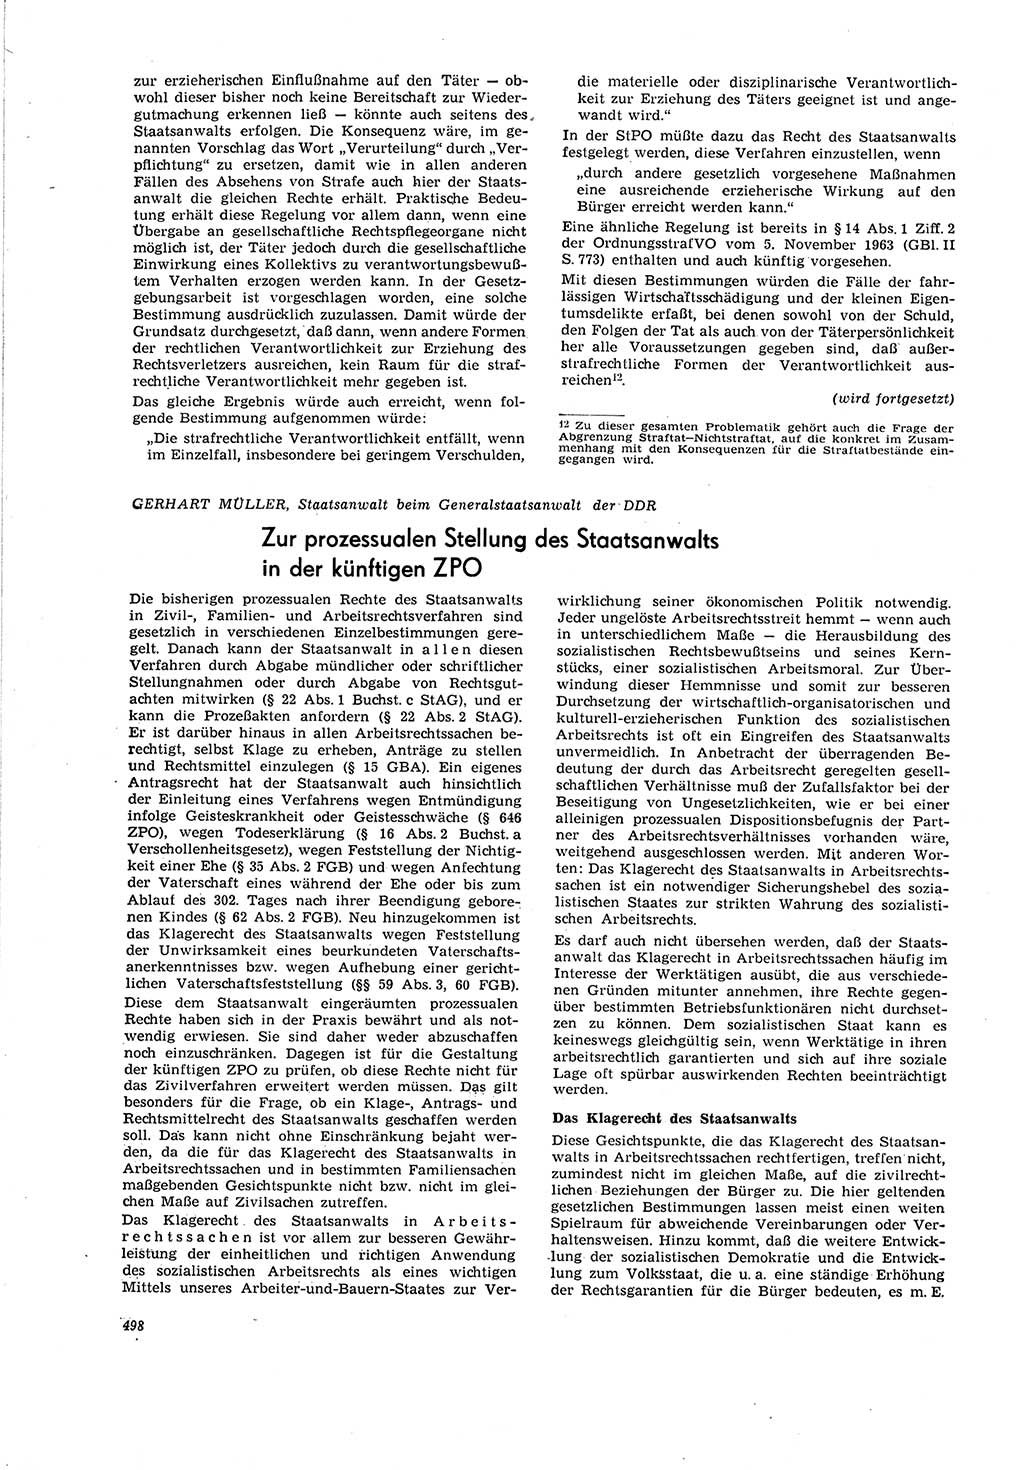 Neue Justiz (NJ), Zeitschrift für Recht und Rechtswissenschaft [Deutsche Demokratische Republik (DDR)], 20. Jahrgang 1966, Seite 498 (NJ DDR 1966, S. 498)